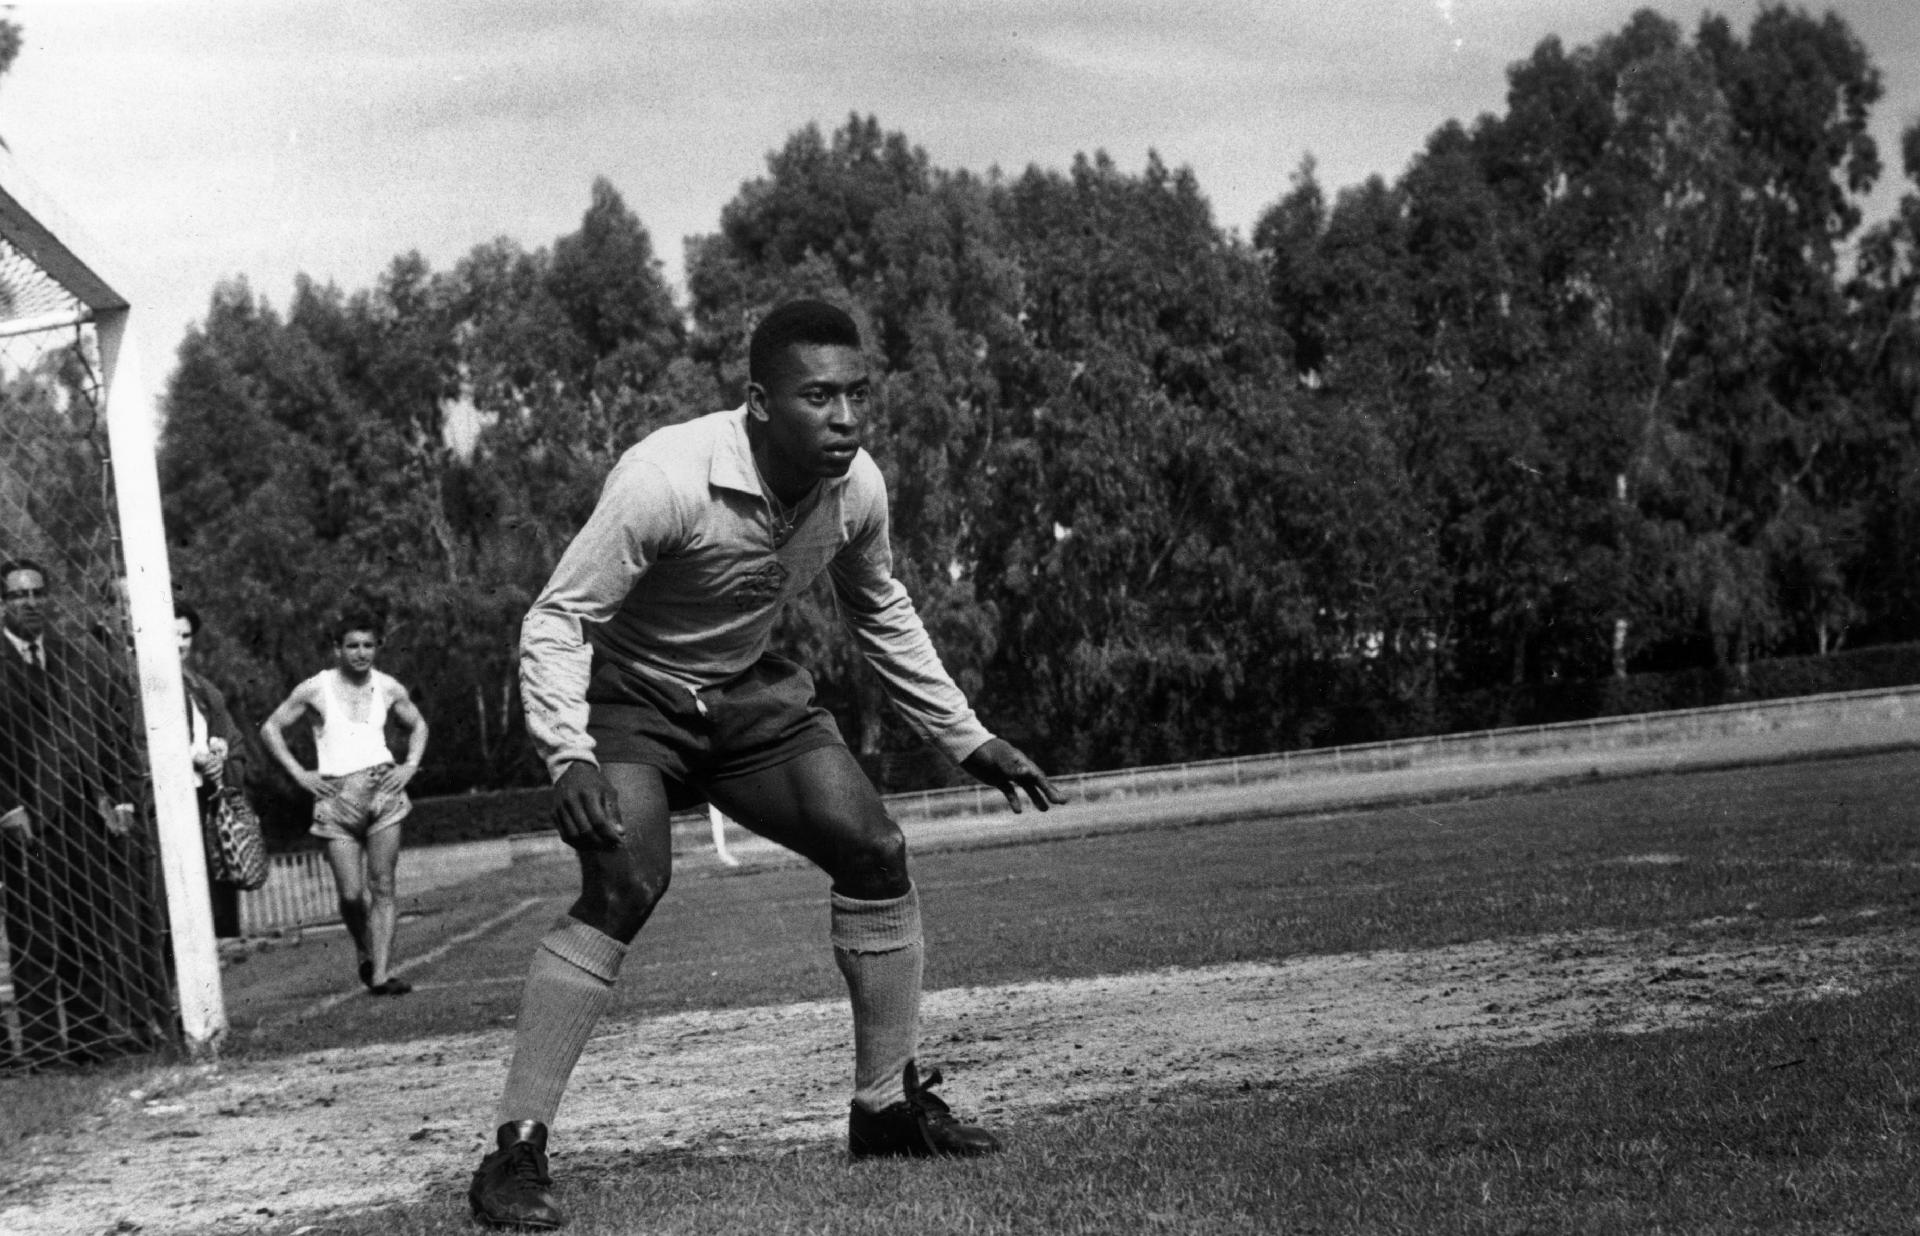 A estrela brasileira da Copa do Mundo, Pelé, considerado o maior jogador de futebol de todos os tempos, durante um treino. - Express/Getty Images